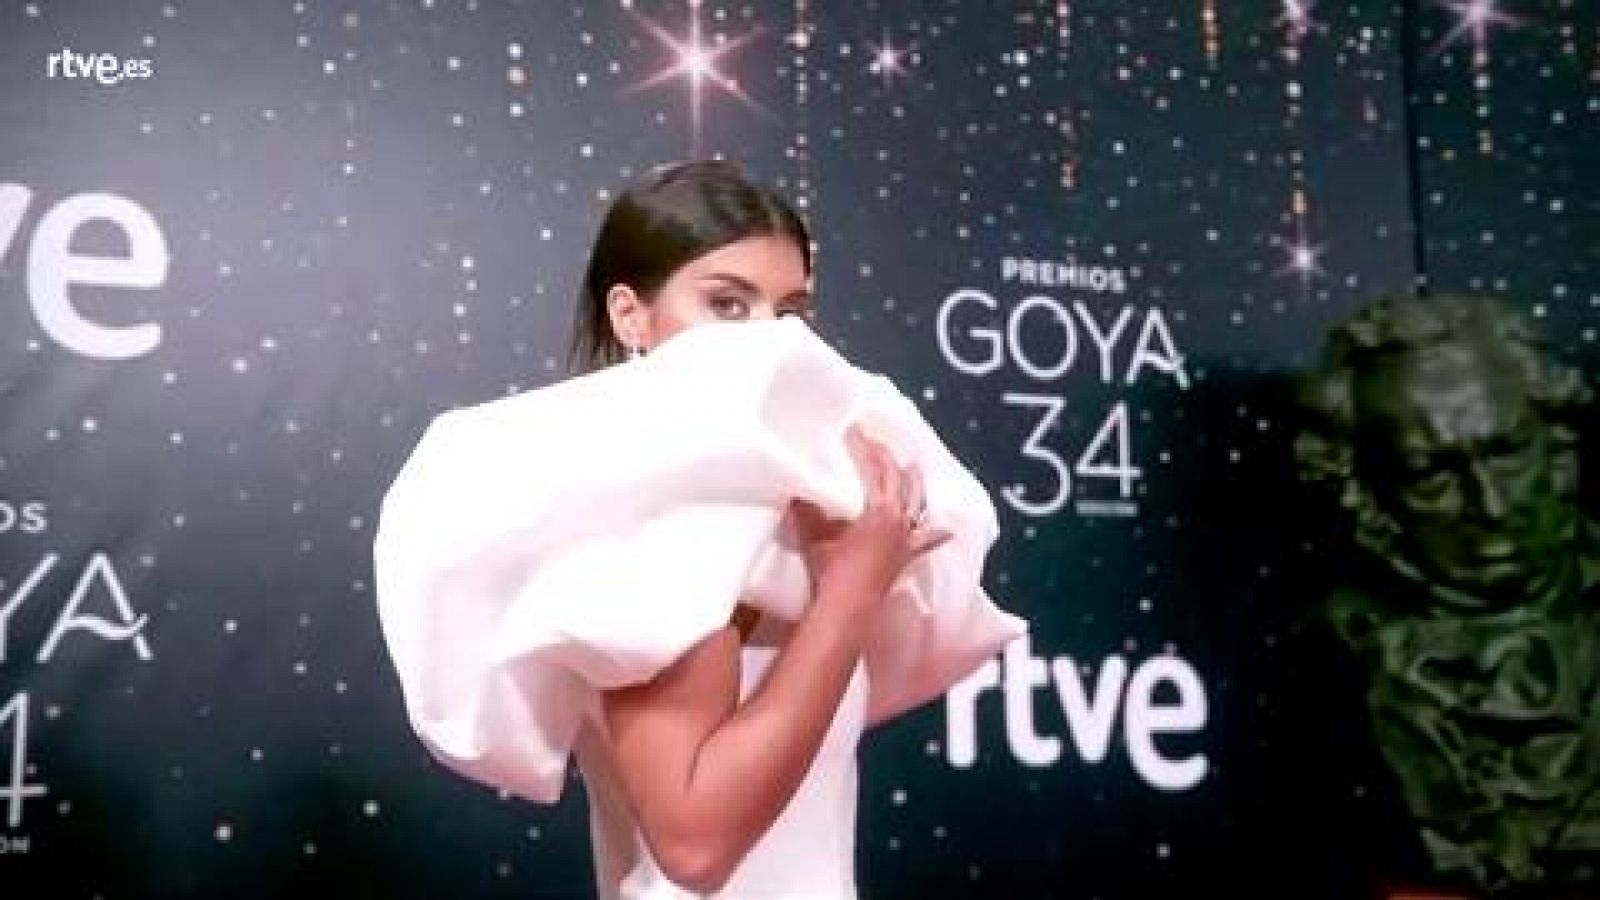 Premios Goya ¿ Dulceida, espectacular de blanco, en la cámara glamur de los Goya